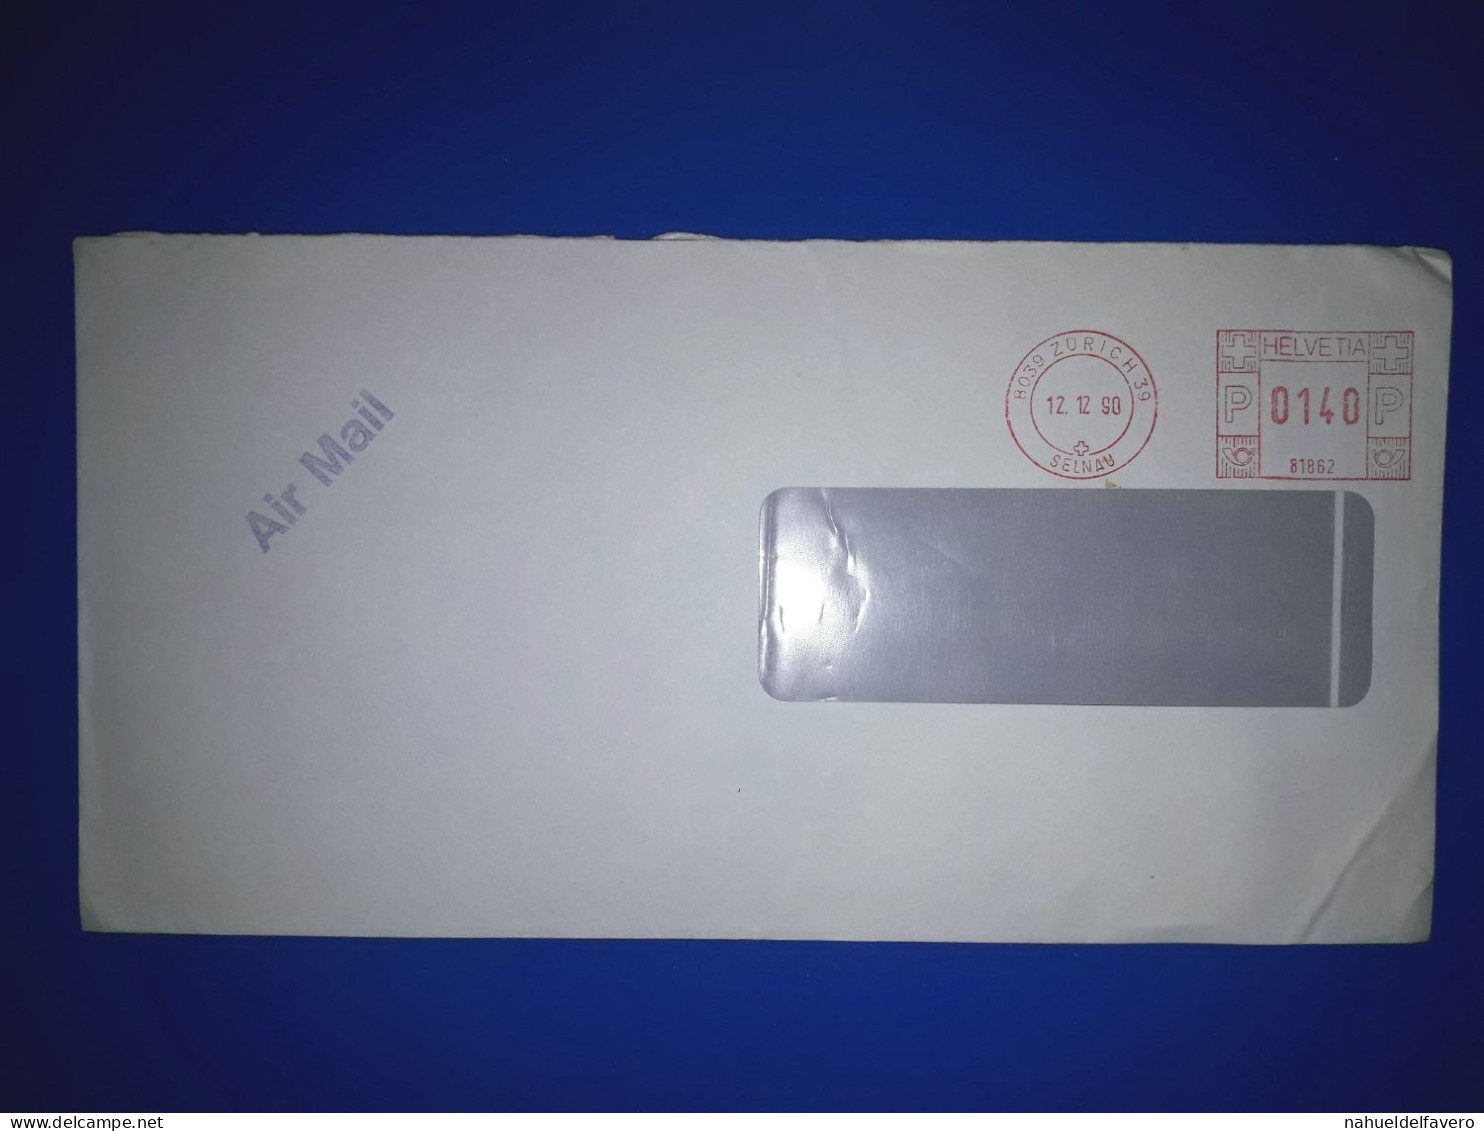 HELVETIA, Enveloppe Prioritaire Circulée Par Avion Avec Affranchissement Mécanique. Année 1990. - Used Stamps